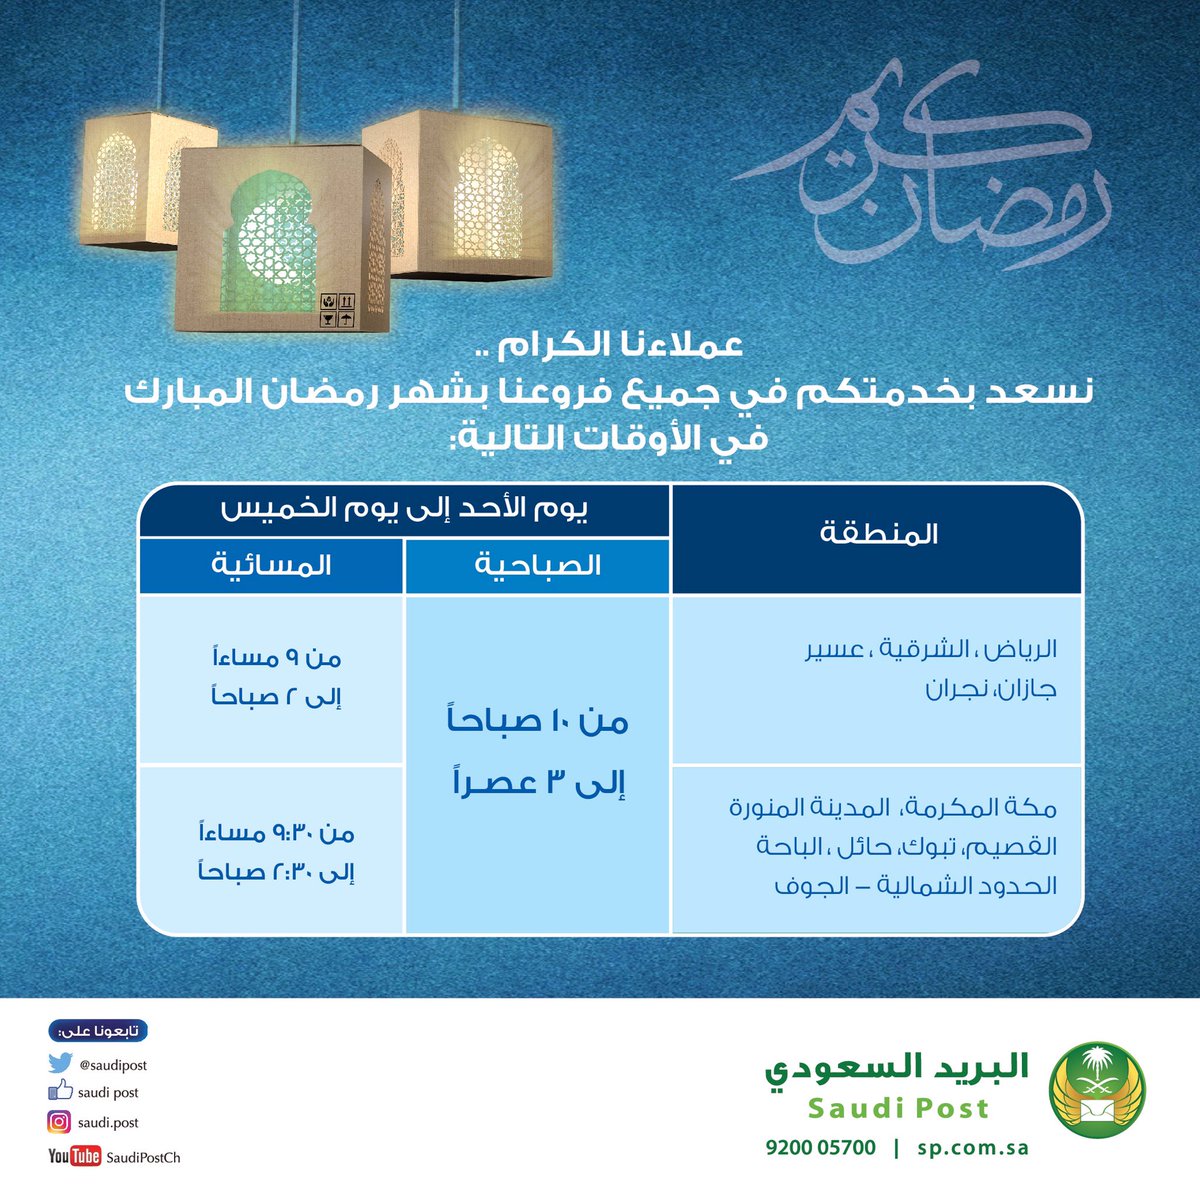 البريد السعودي On Twitter أوقات عمل مكاتب البريد السعودي من الأحد إلى الخميس خلال شهر رمضان المبارك